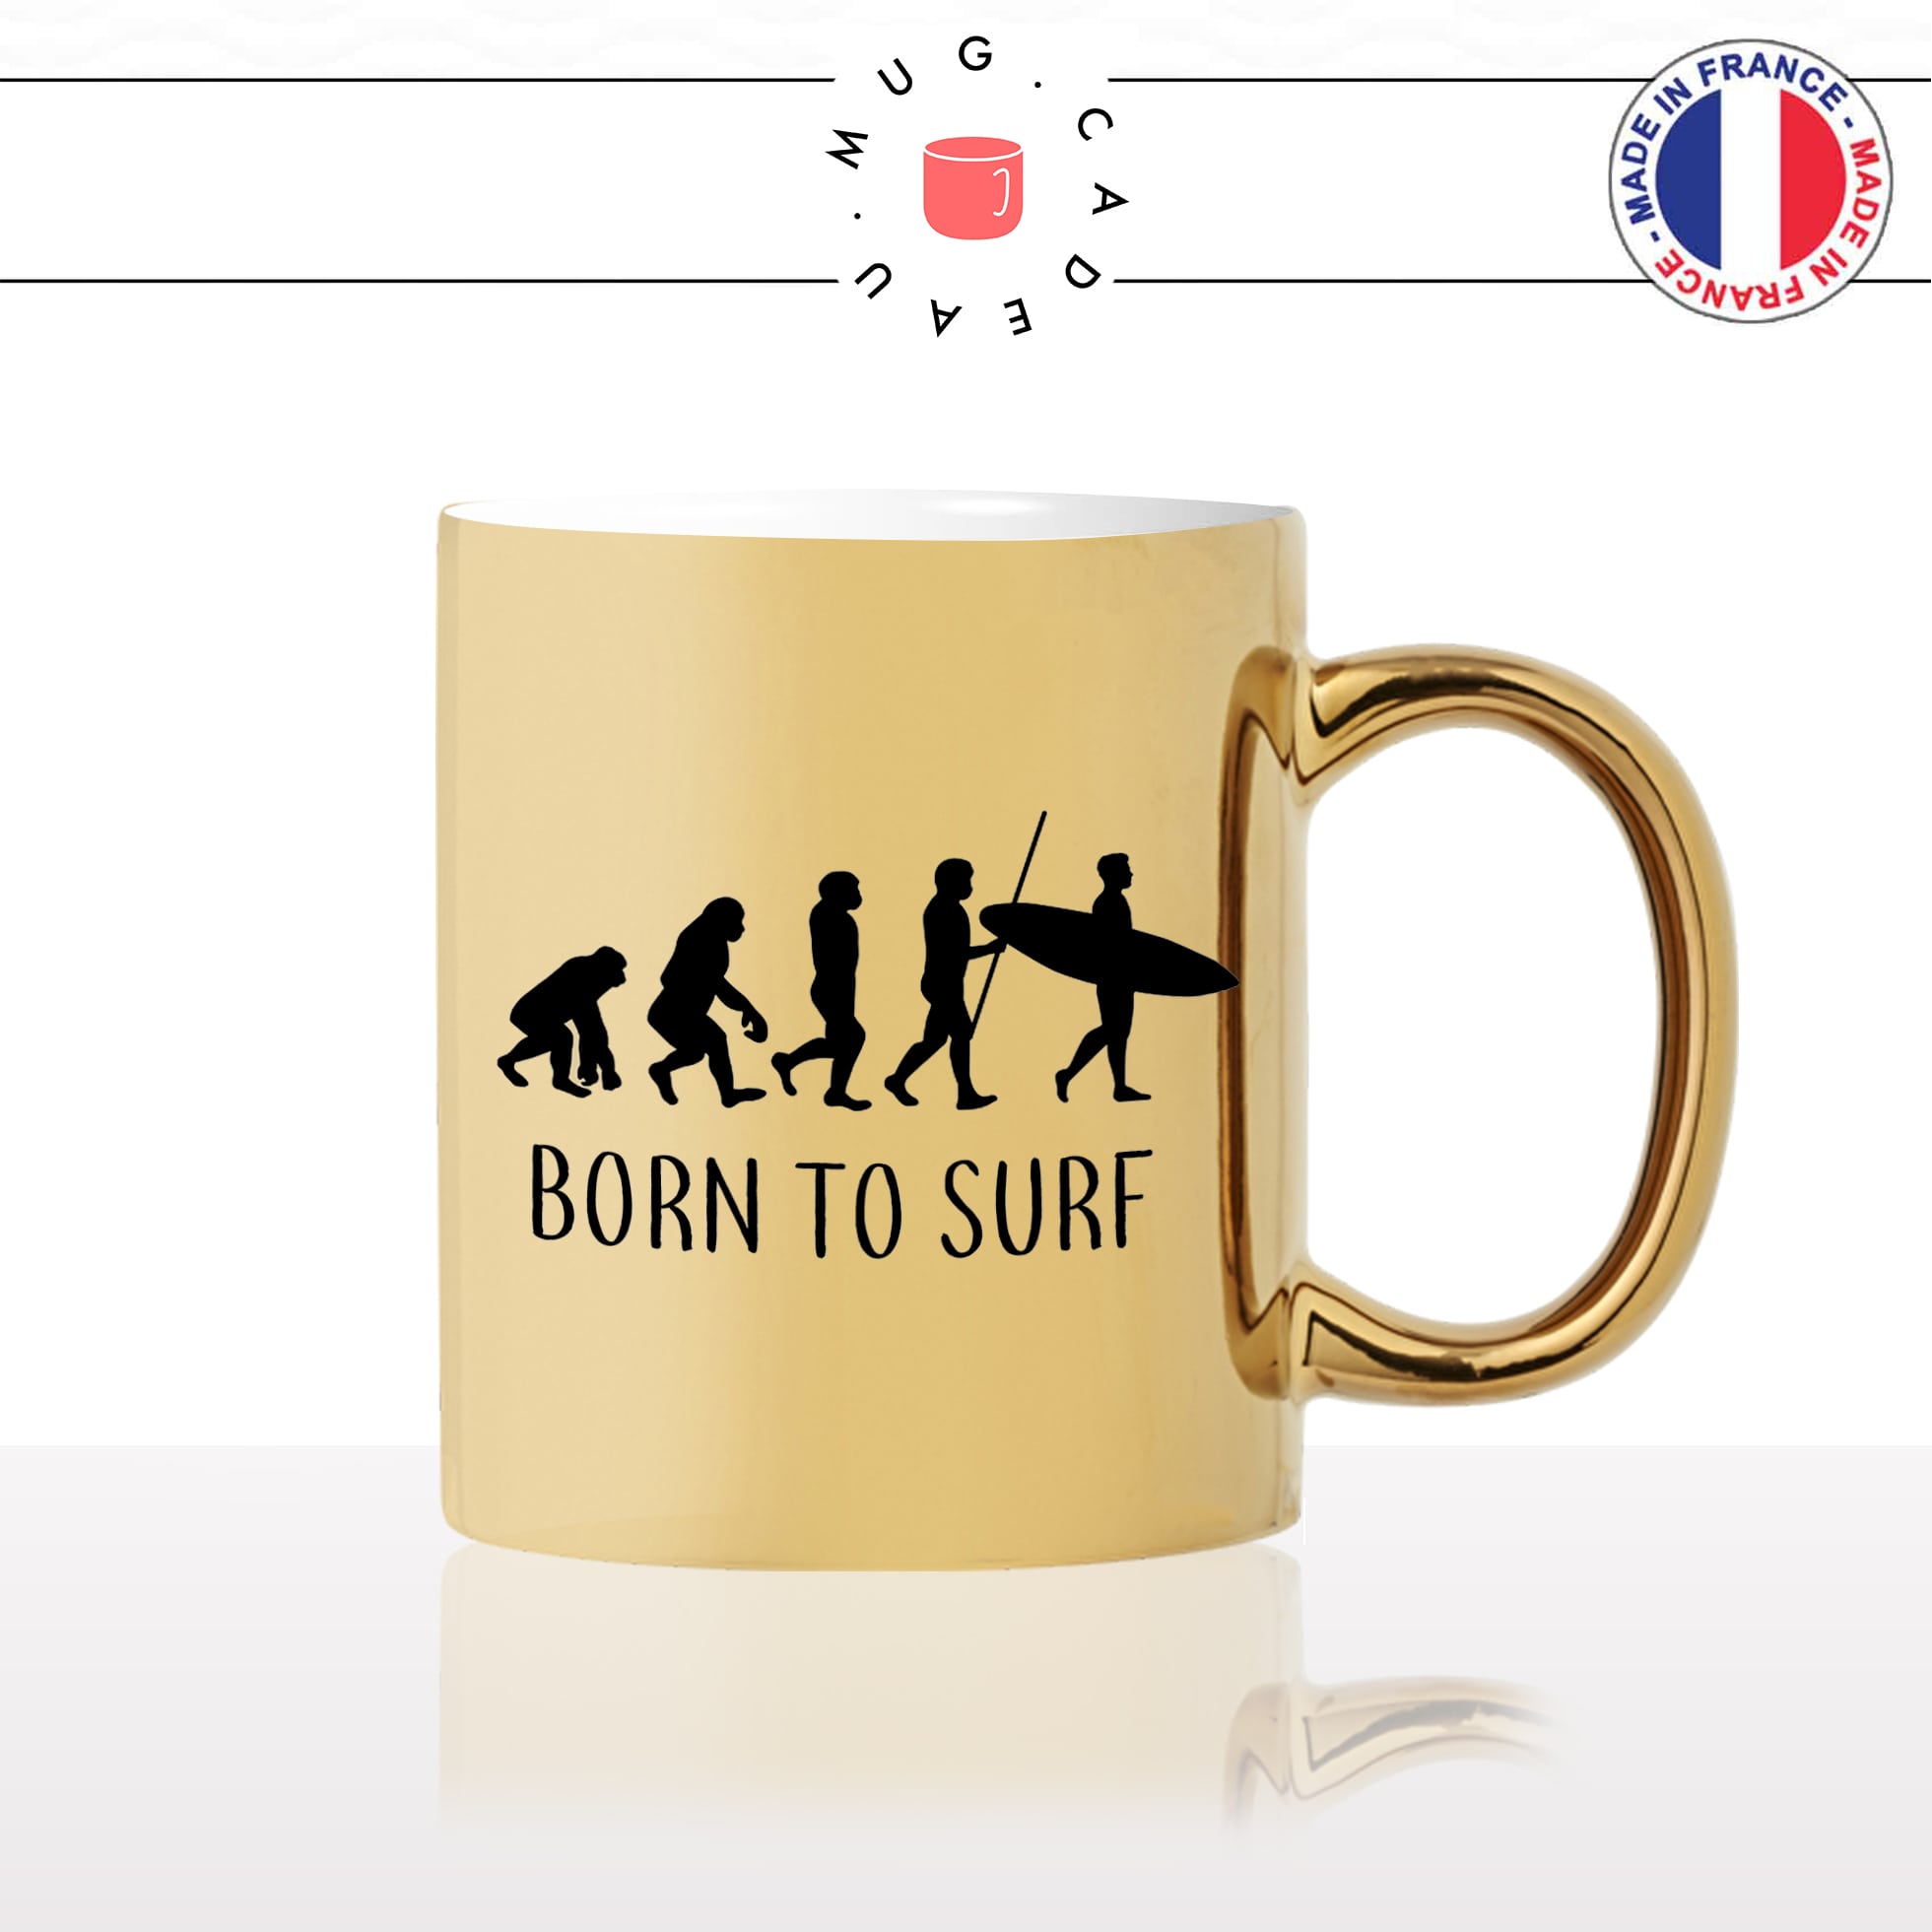 mug-tasse-or-doré-gold-born-to-surf-surfing-vague-paddle-planche-sport-evolution-humaine-cool-idée-cadeau-fun-café-thé-personnalisé2-min